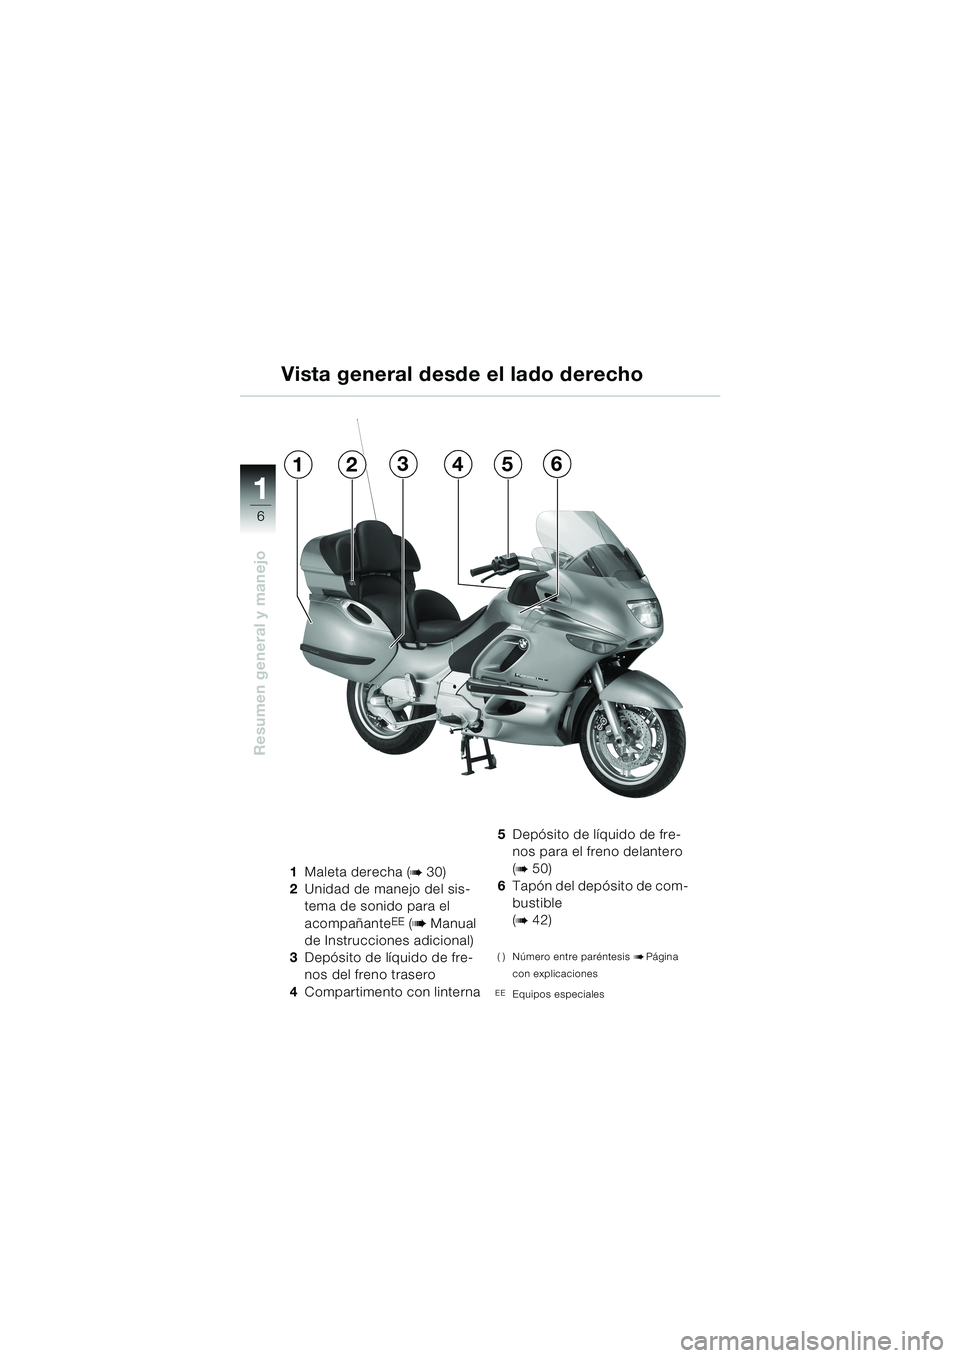 BMW MOTORRAD K 1200 LT 2002  Manual de instrucciones (in Spanish) 6
Resumen general y manejo
1
Vista general desde el lado derecho
1Maleta derecha (b 30)
2Unidad de manejo del sis-
tema de sonido para el 
acompañante
EE (b Manual 
de Instrucciones adicional)
3Depó